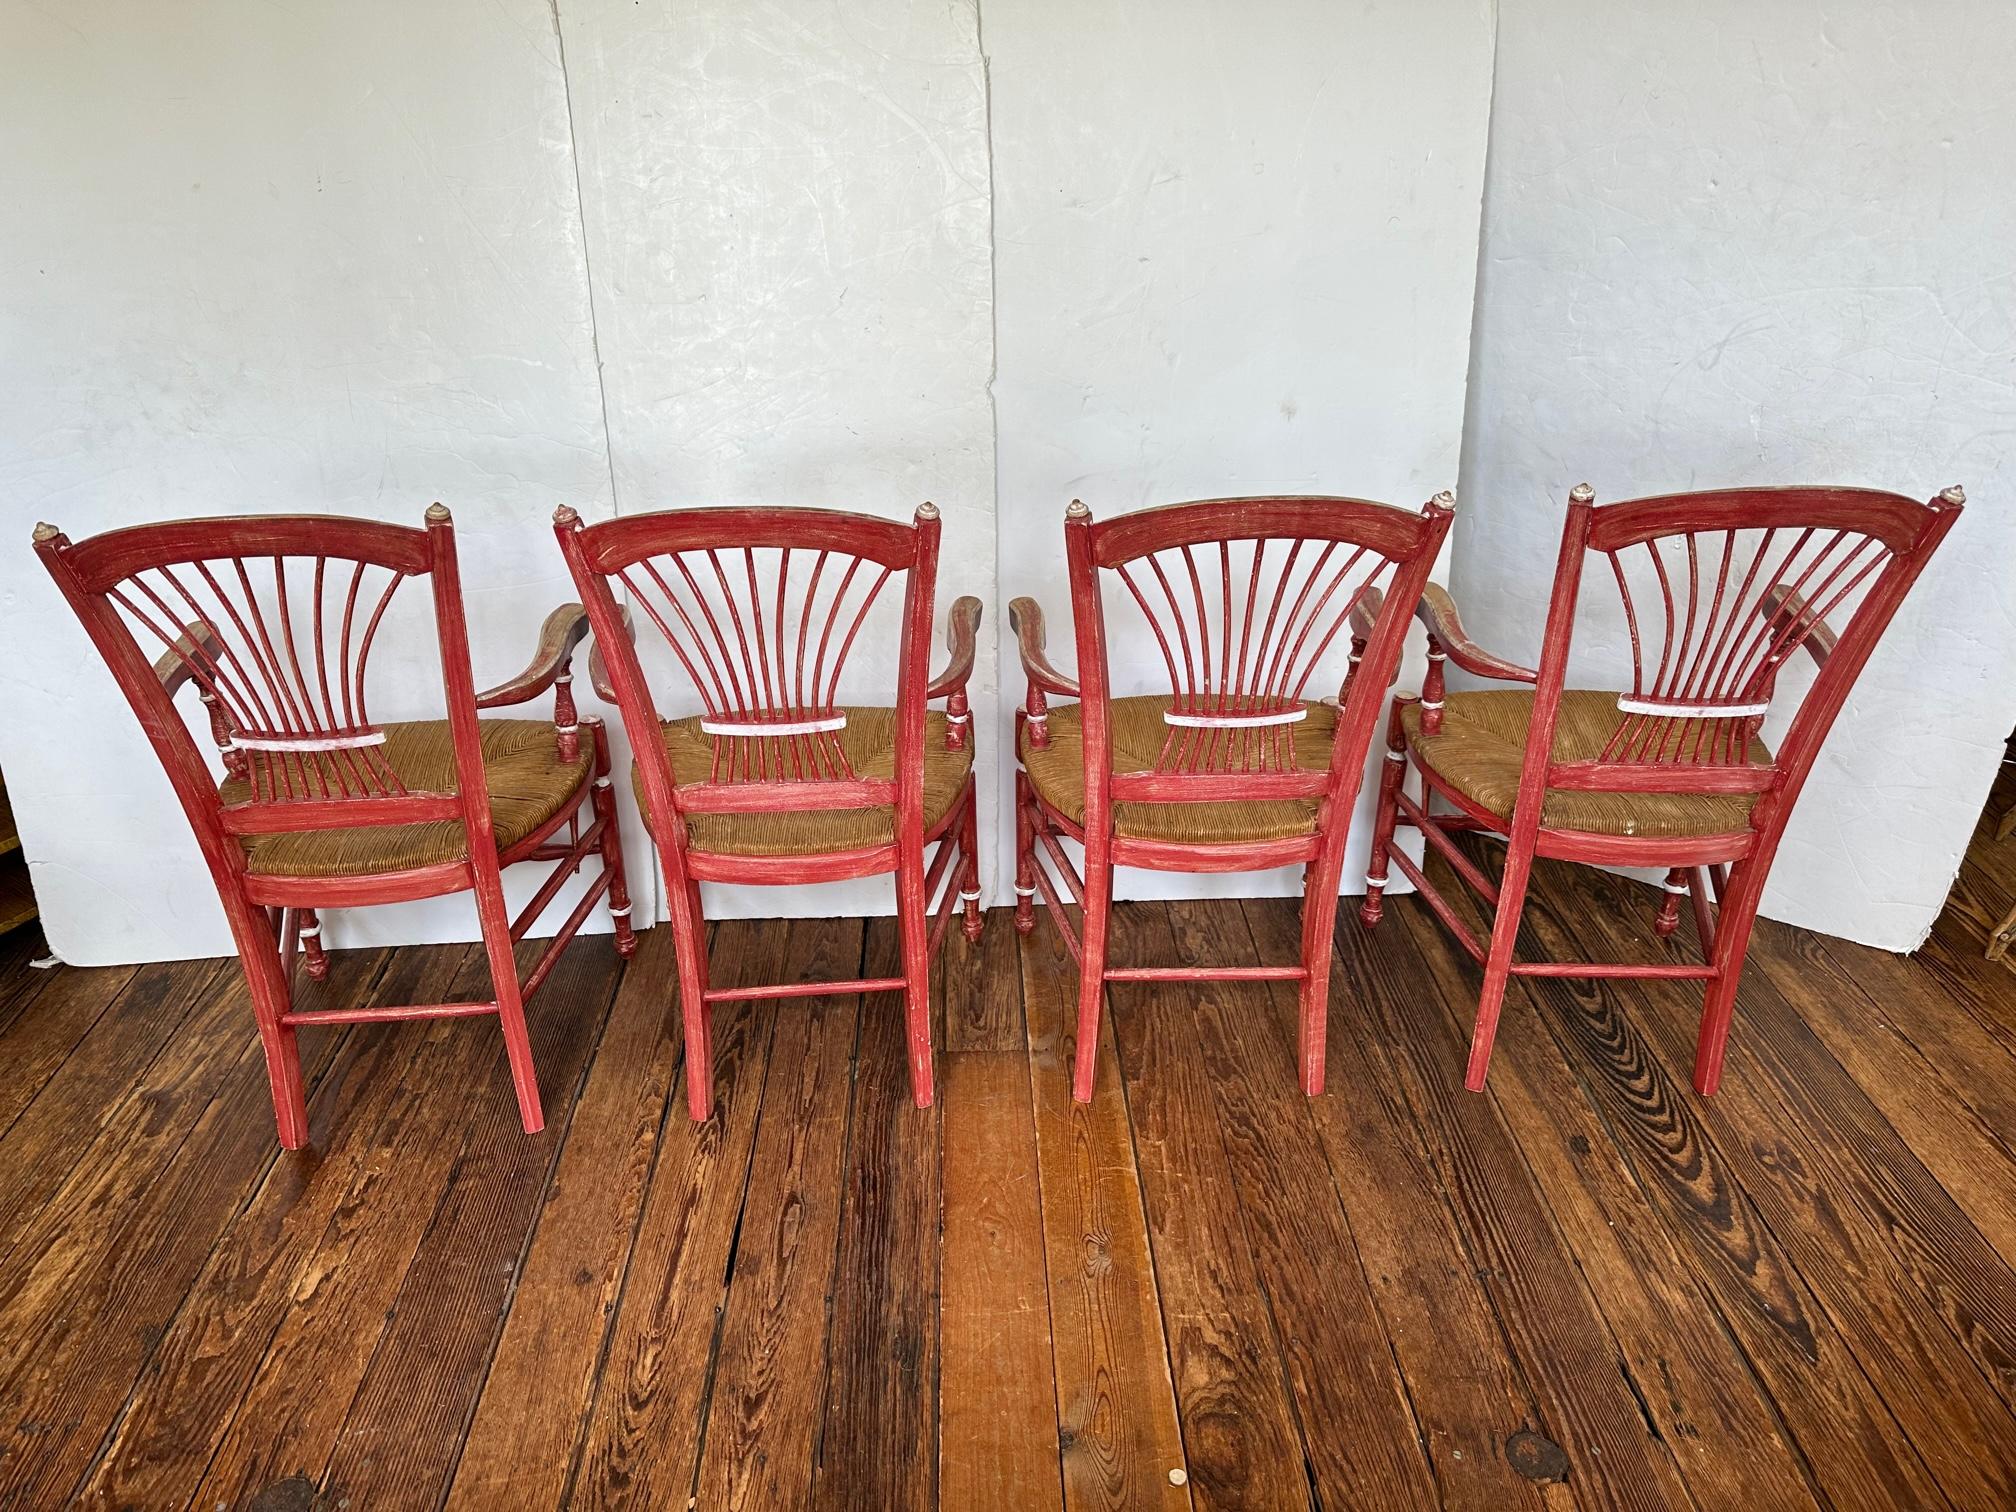 Ensemble de 4 chaises de salle à manger de style French Country, toutes des chaises à accoudoir, avec de magnifiques dossiers en forme de gerbe de blé et des sièges en jonc naturel.  Ils sont peints en rouge framboise avec une finition antiquaire et